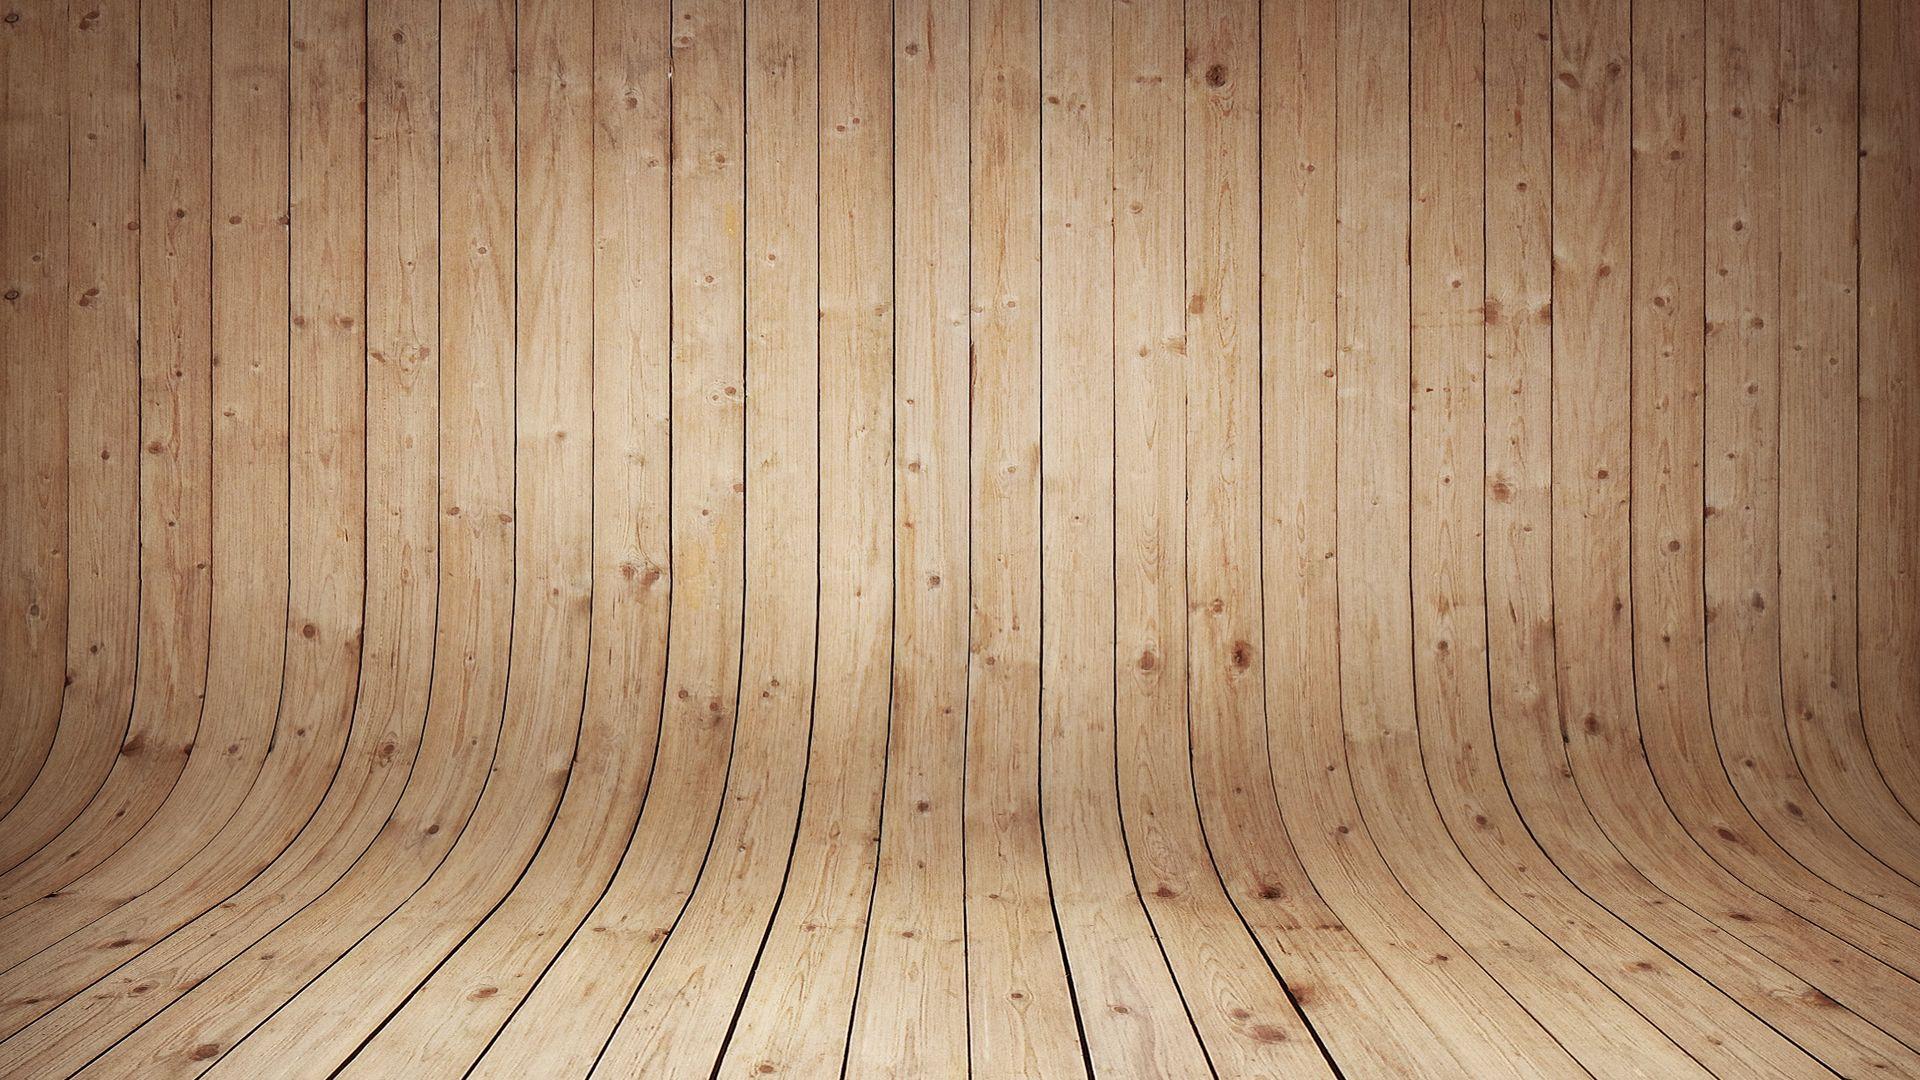 Wood Wall HD desktop wallpaper Widescreen High Definition. Wood